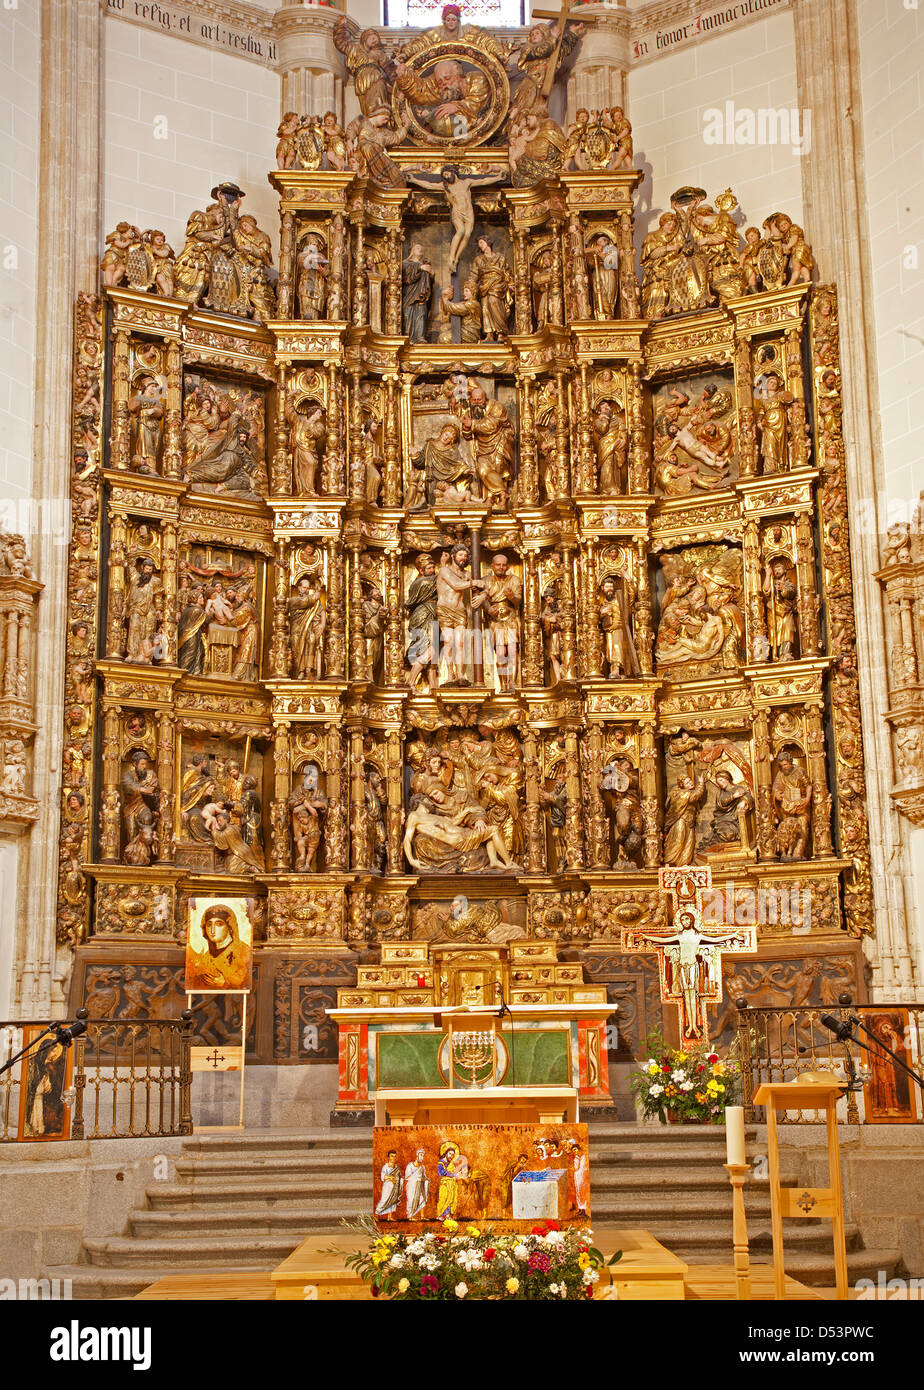 MADRID - MARZO 10: rinascimentale scolpito e altare policromo della Capilla del Obispo da Francisco Giralte (1500-1576) Foto Stock